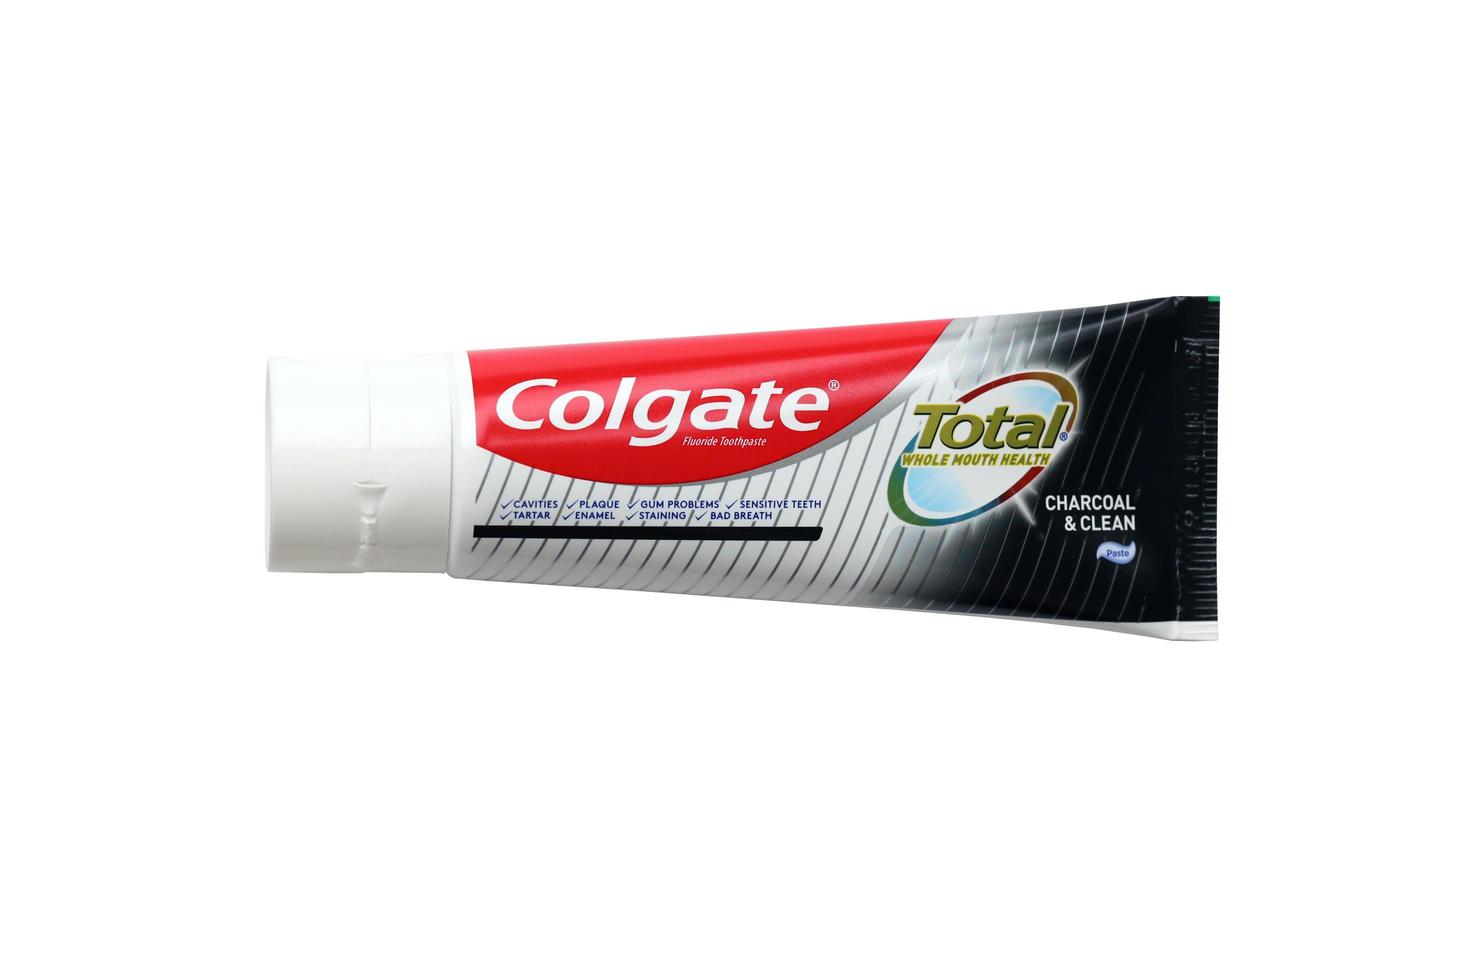 ternopil, ukraine - 23. juni 2022 colgate zahnpasta, eine marke von mundhygieneprodukten, die vom amerikanischen konsumgüterunternehmen colgate-palmolive hergestellt werden foto